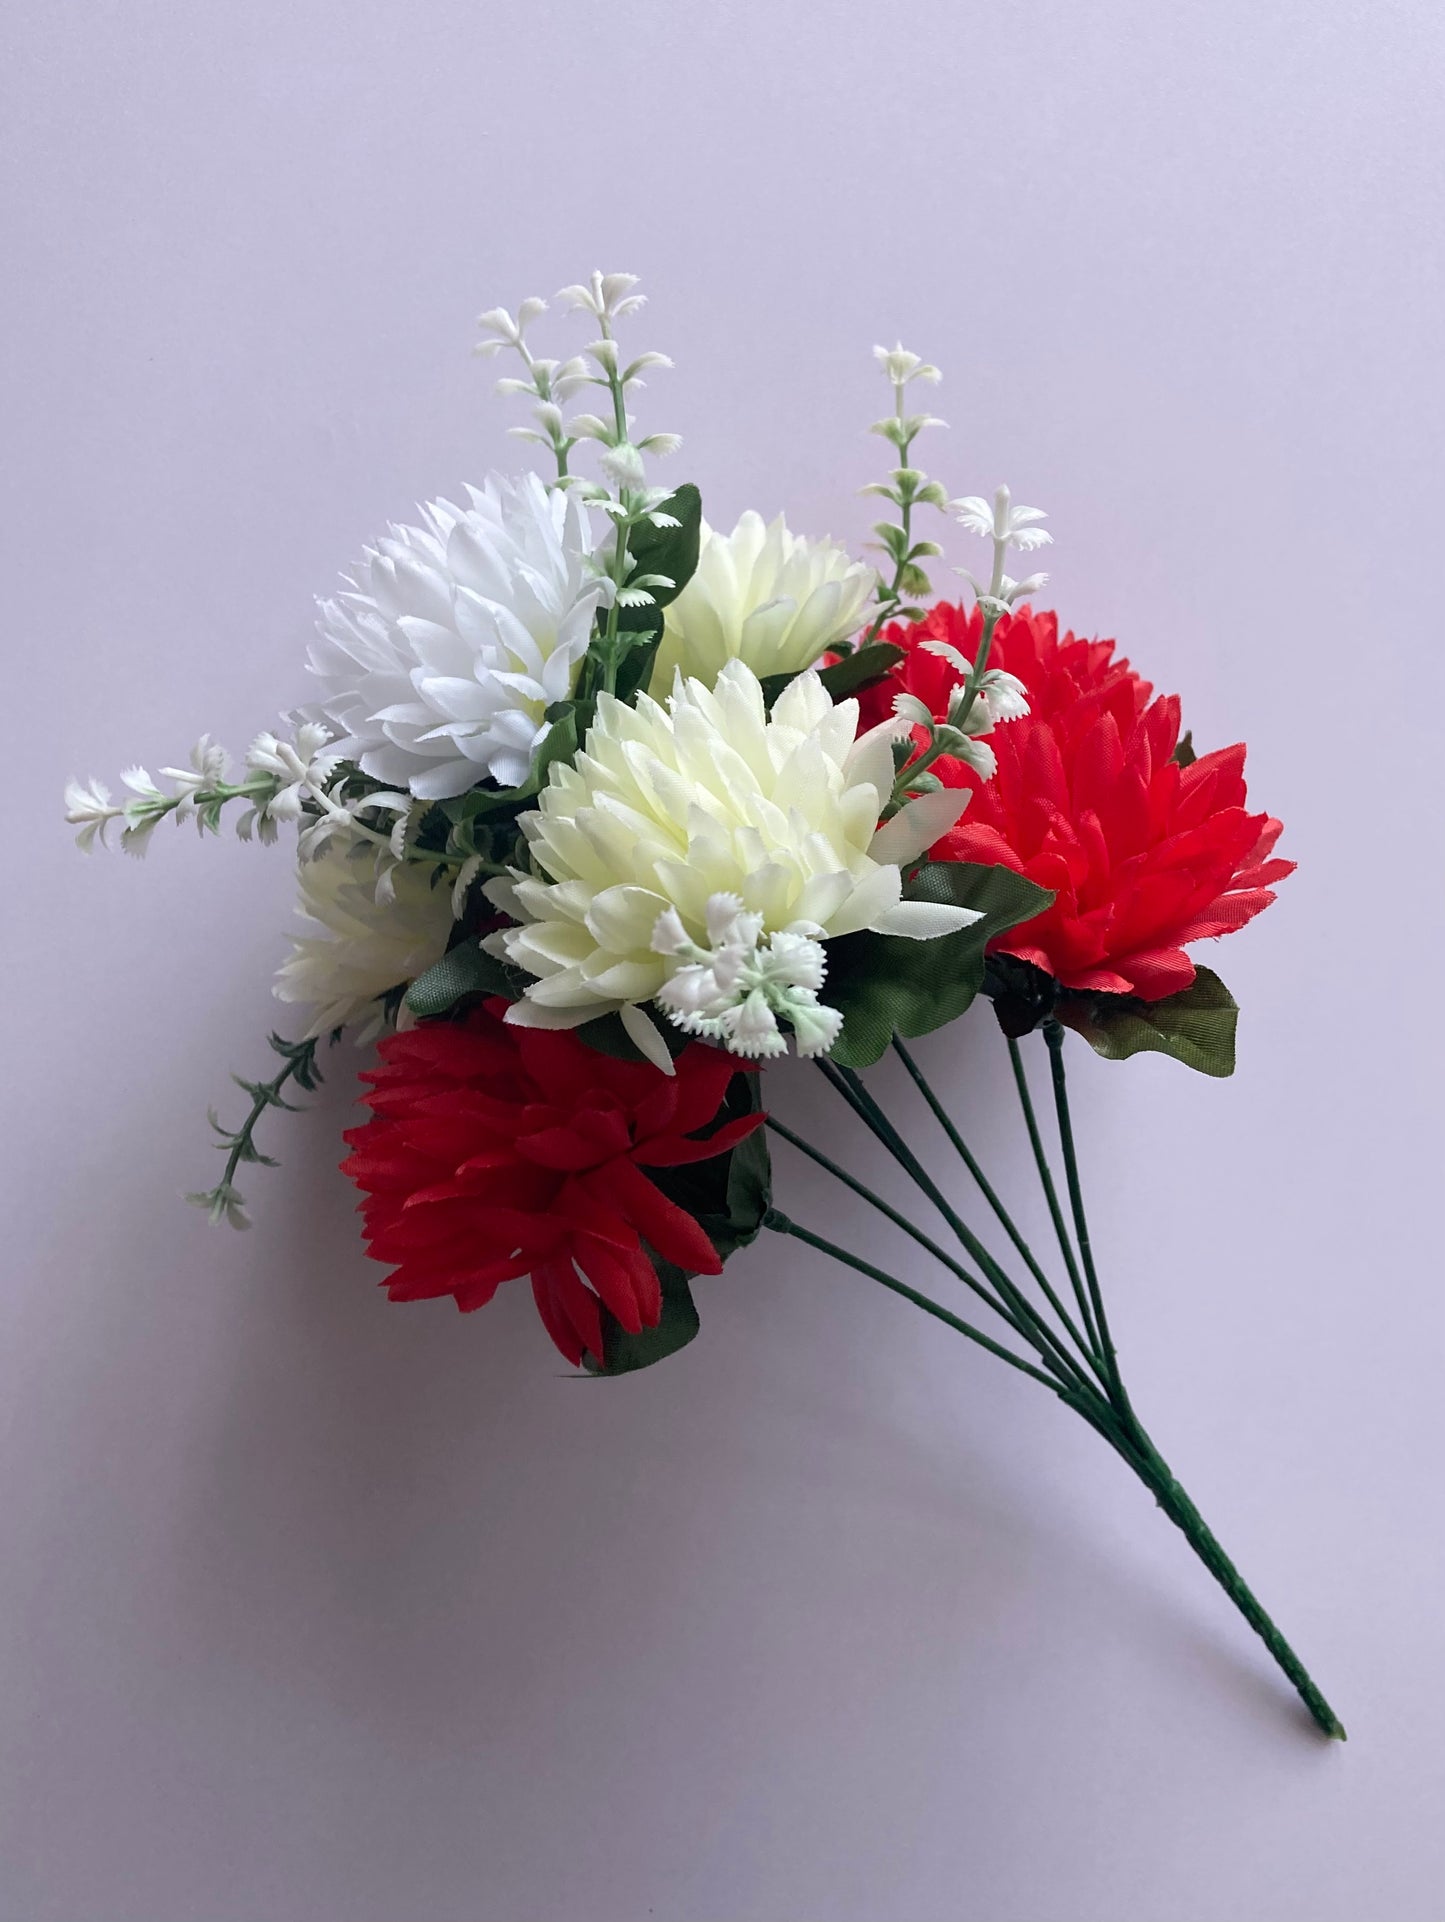 Red & Cream Chrysanthemum Bunch